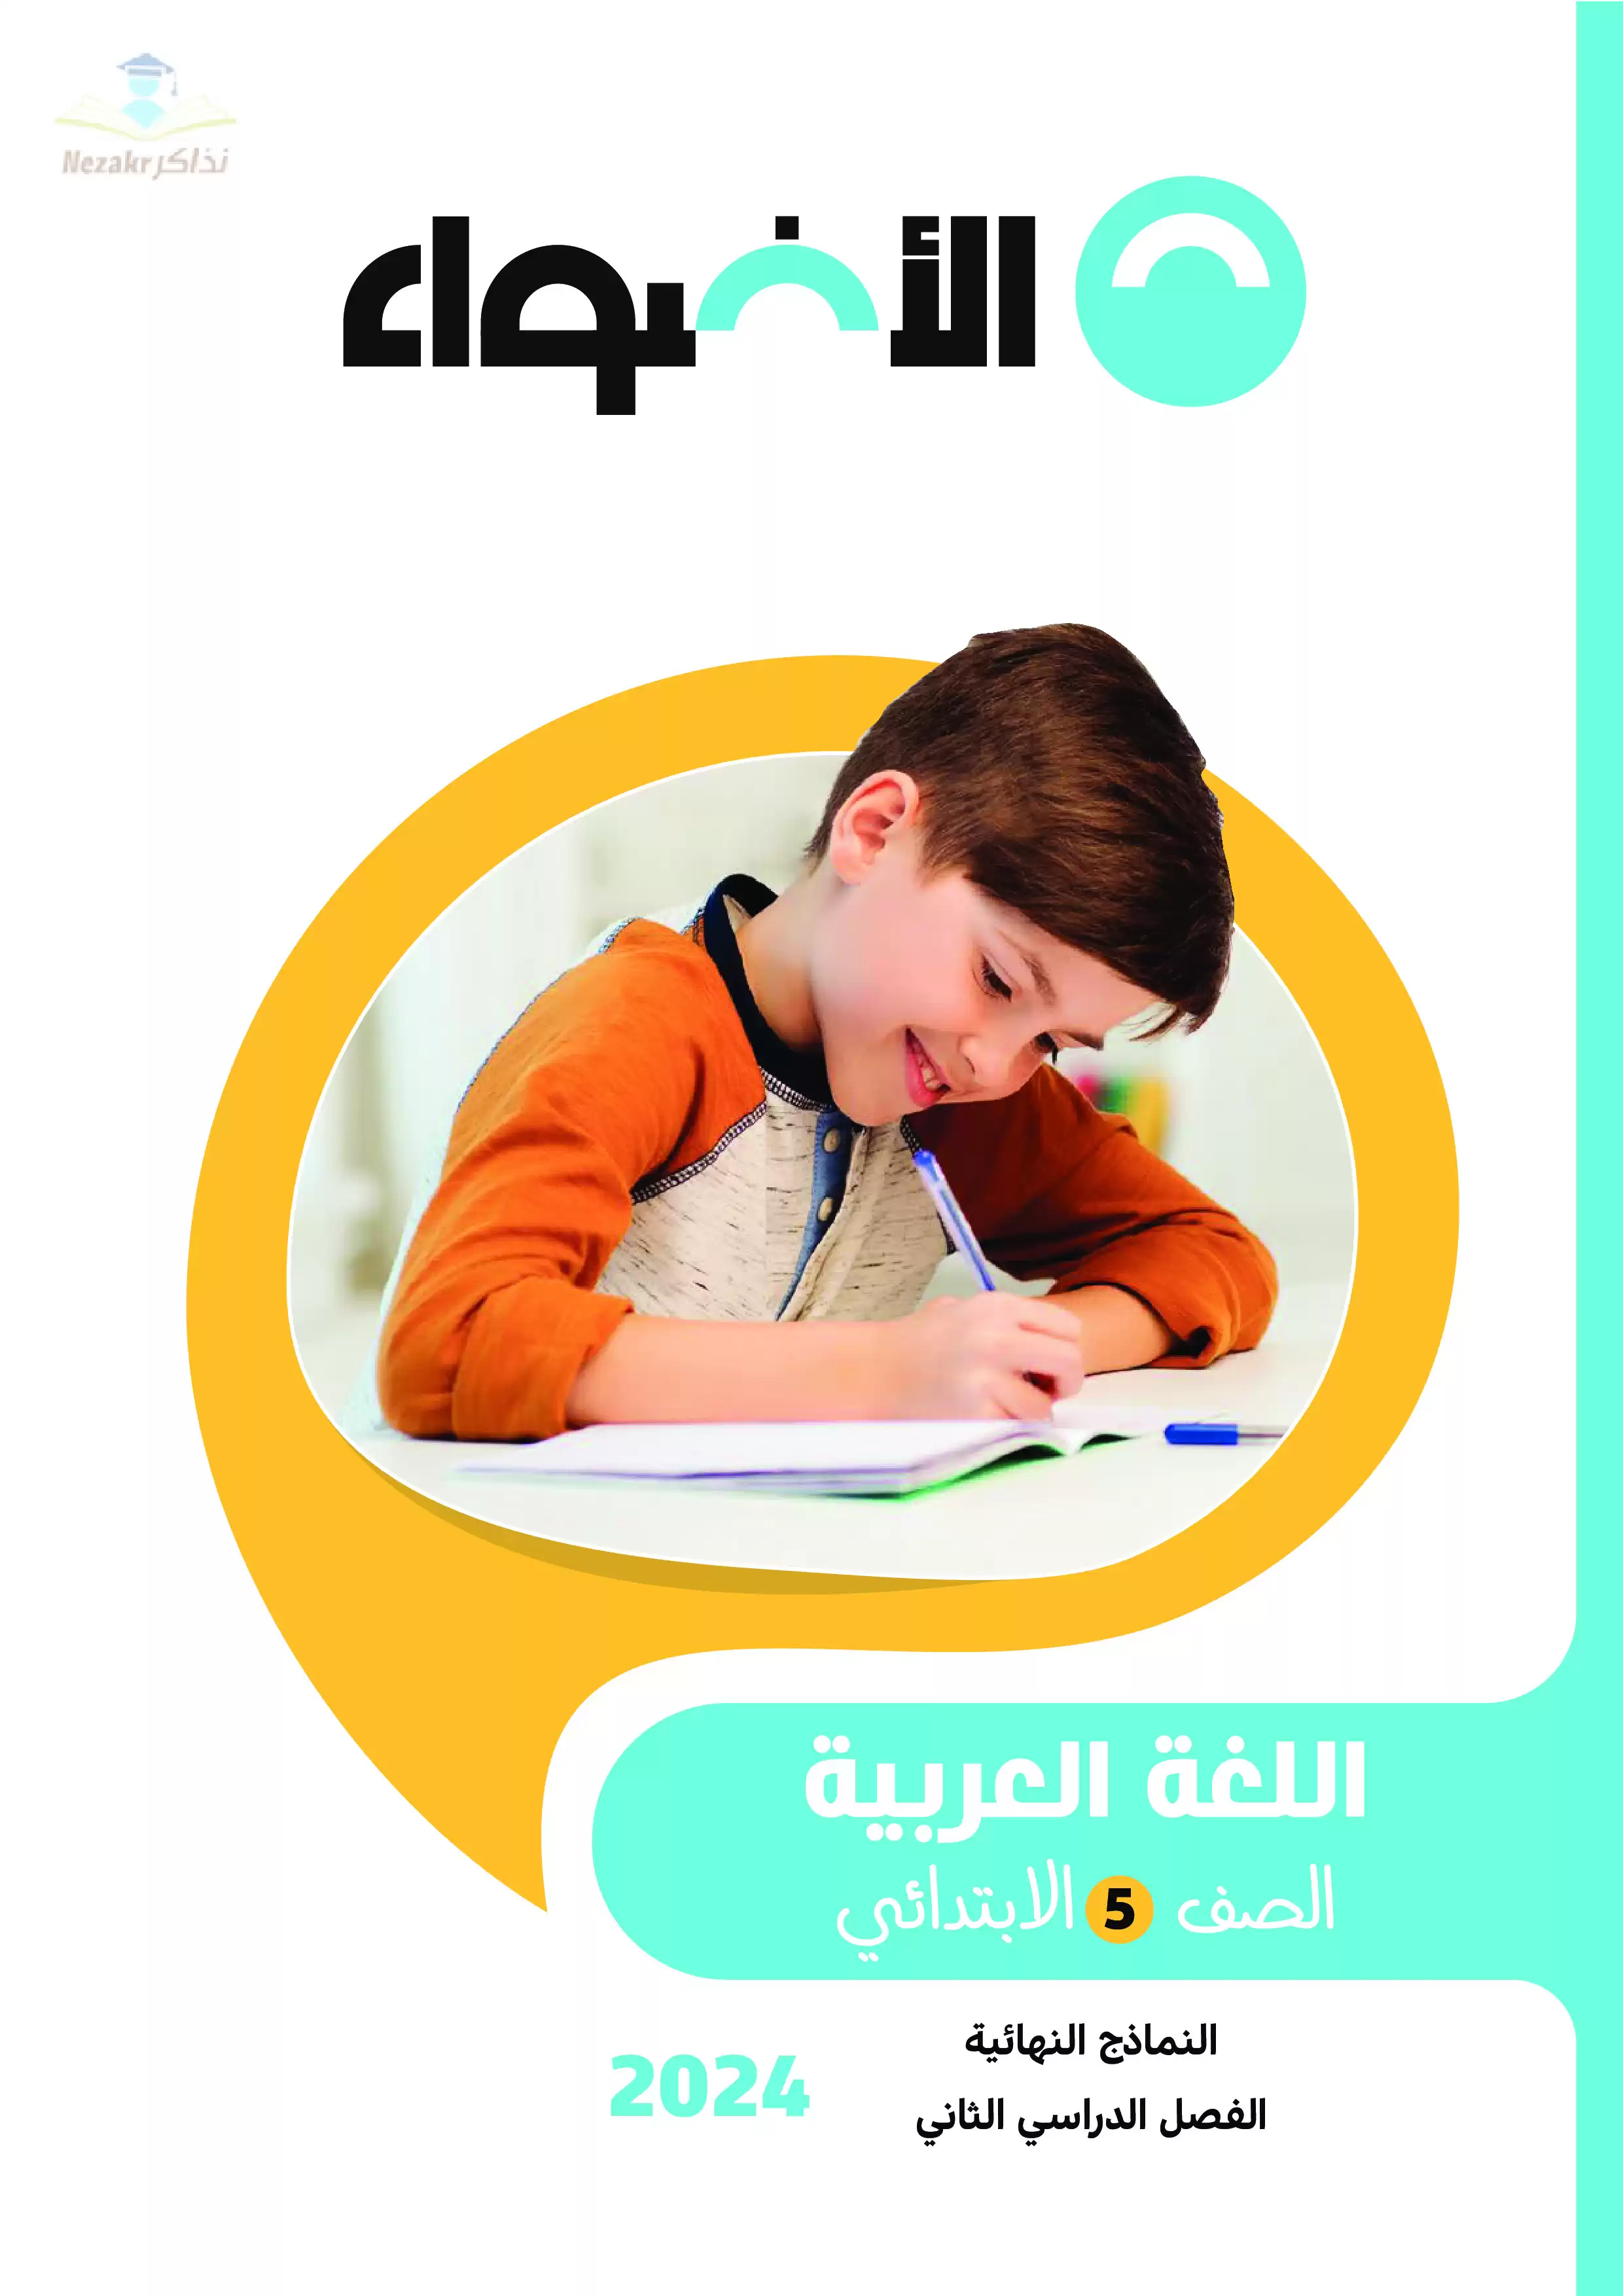  مراجعة الأضواء النهائية في اللغة العربية للصف الخامس الابتدائي الفصل الدراسي الثاني